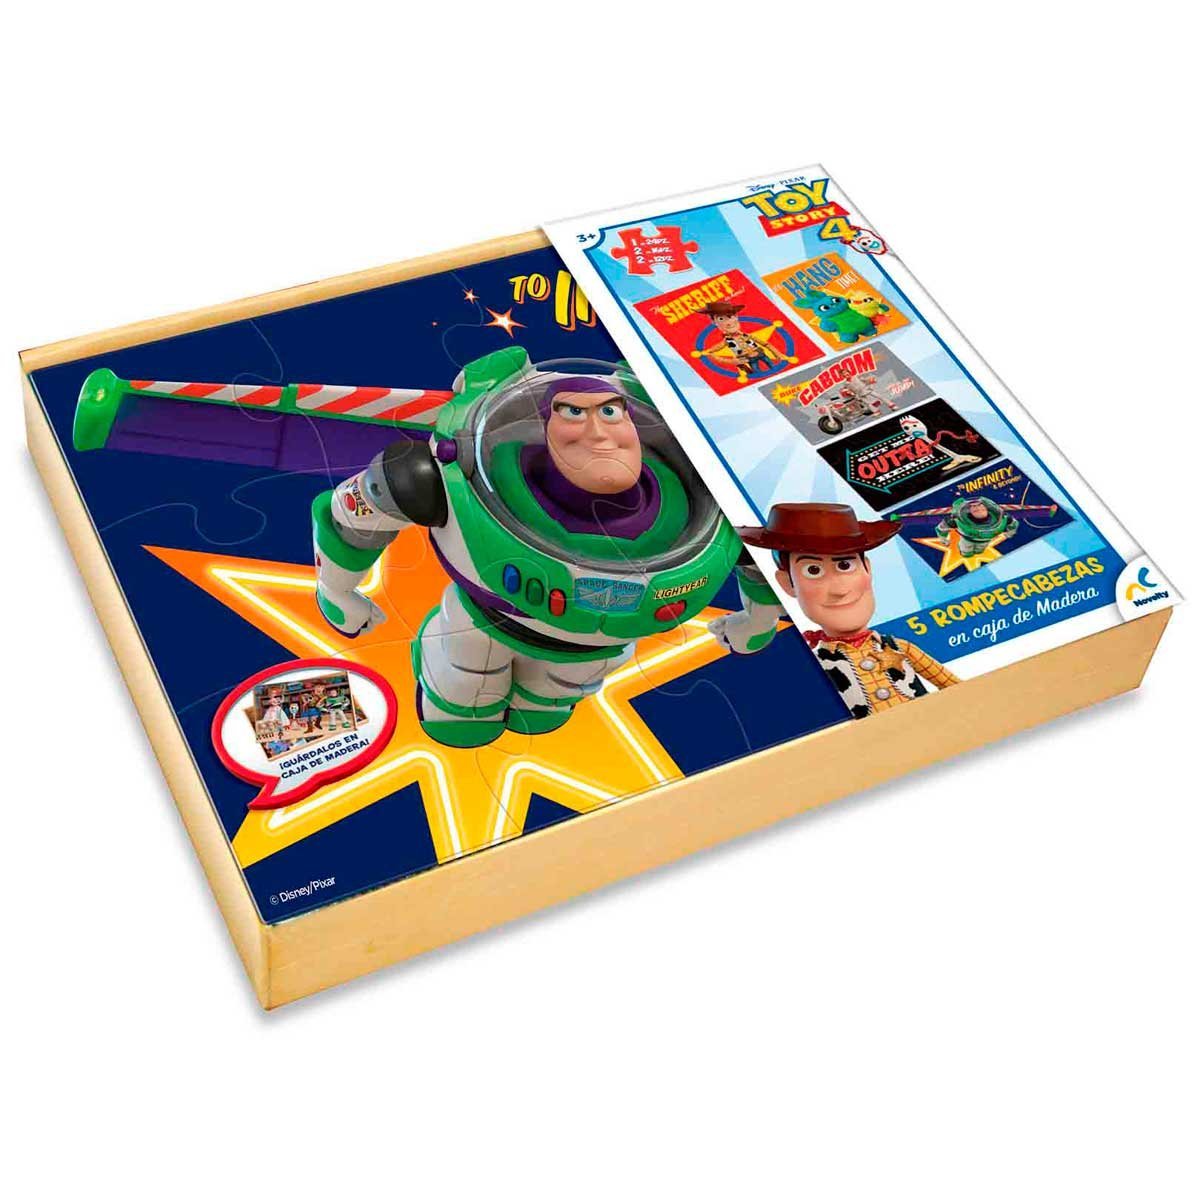 Rompecabezas de Carton en Caja de Madera 5 en 1 Toy Story 4  Novelty - Juego de Mesa